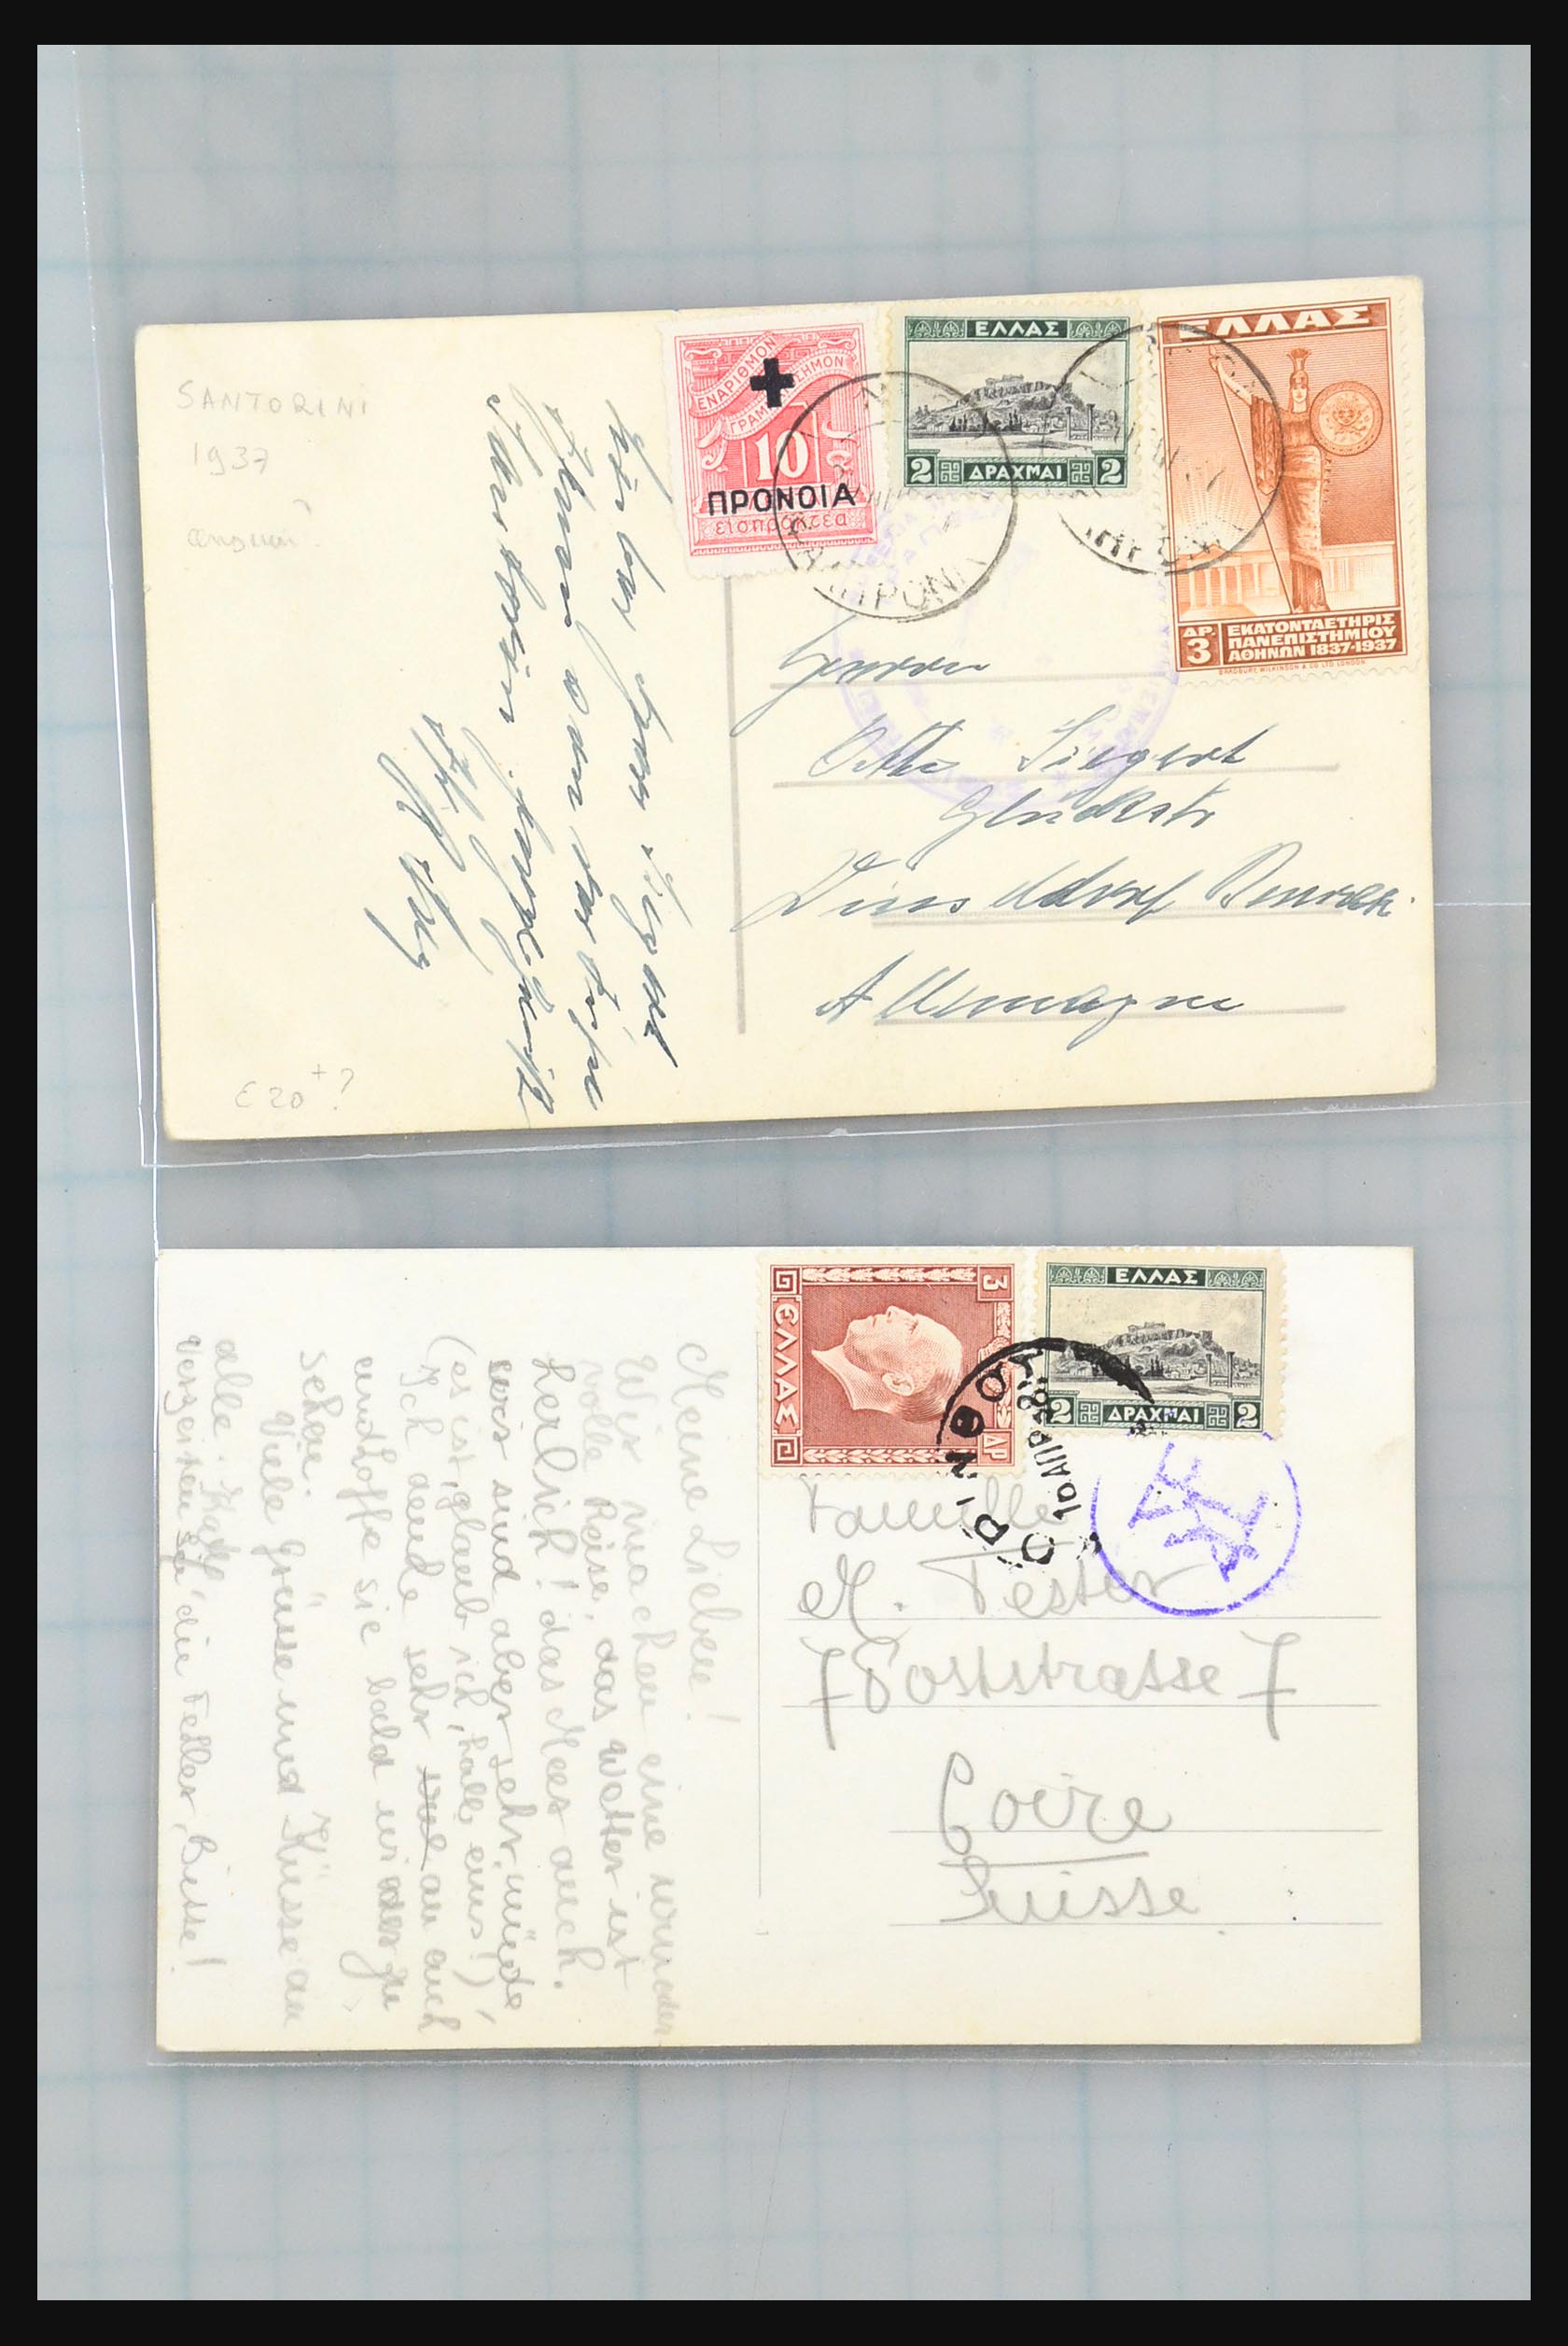 31358 183 - 31358 Portugal/Luxemburg/Griekenland brieven 1880-1960.